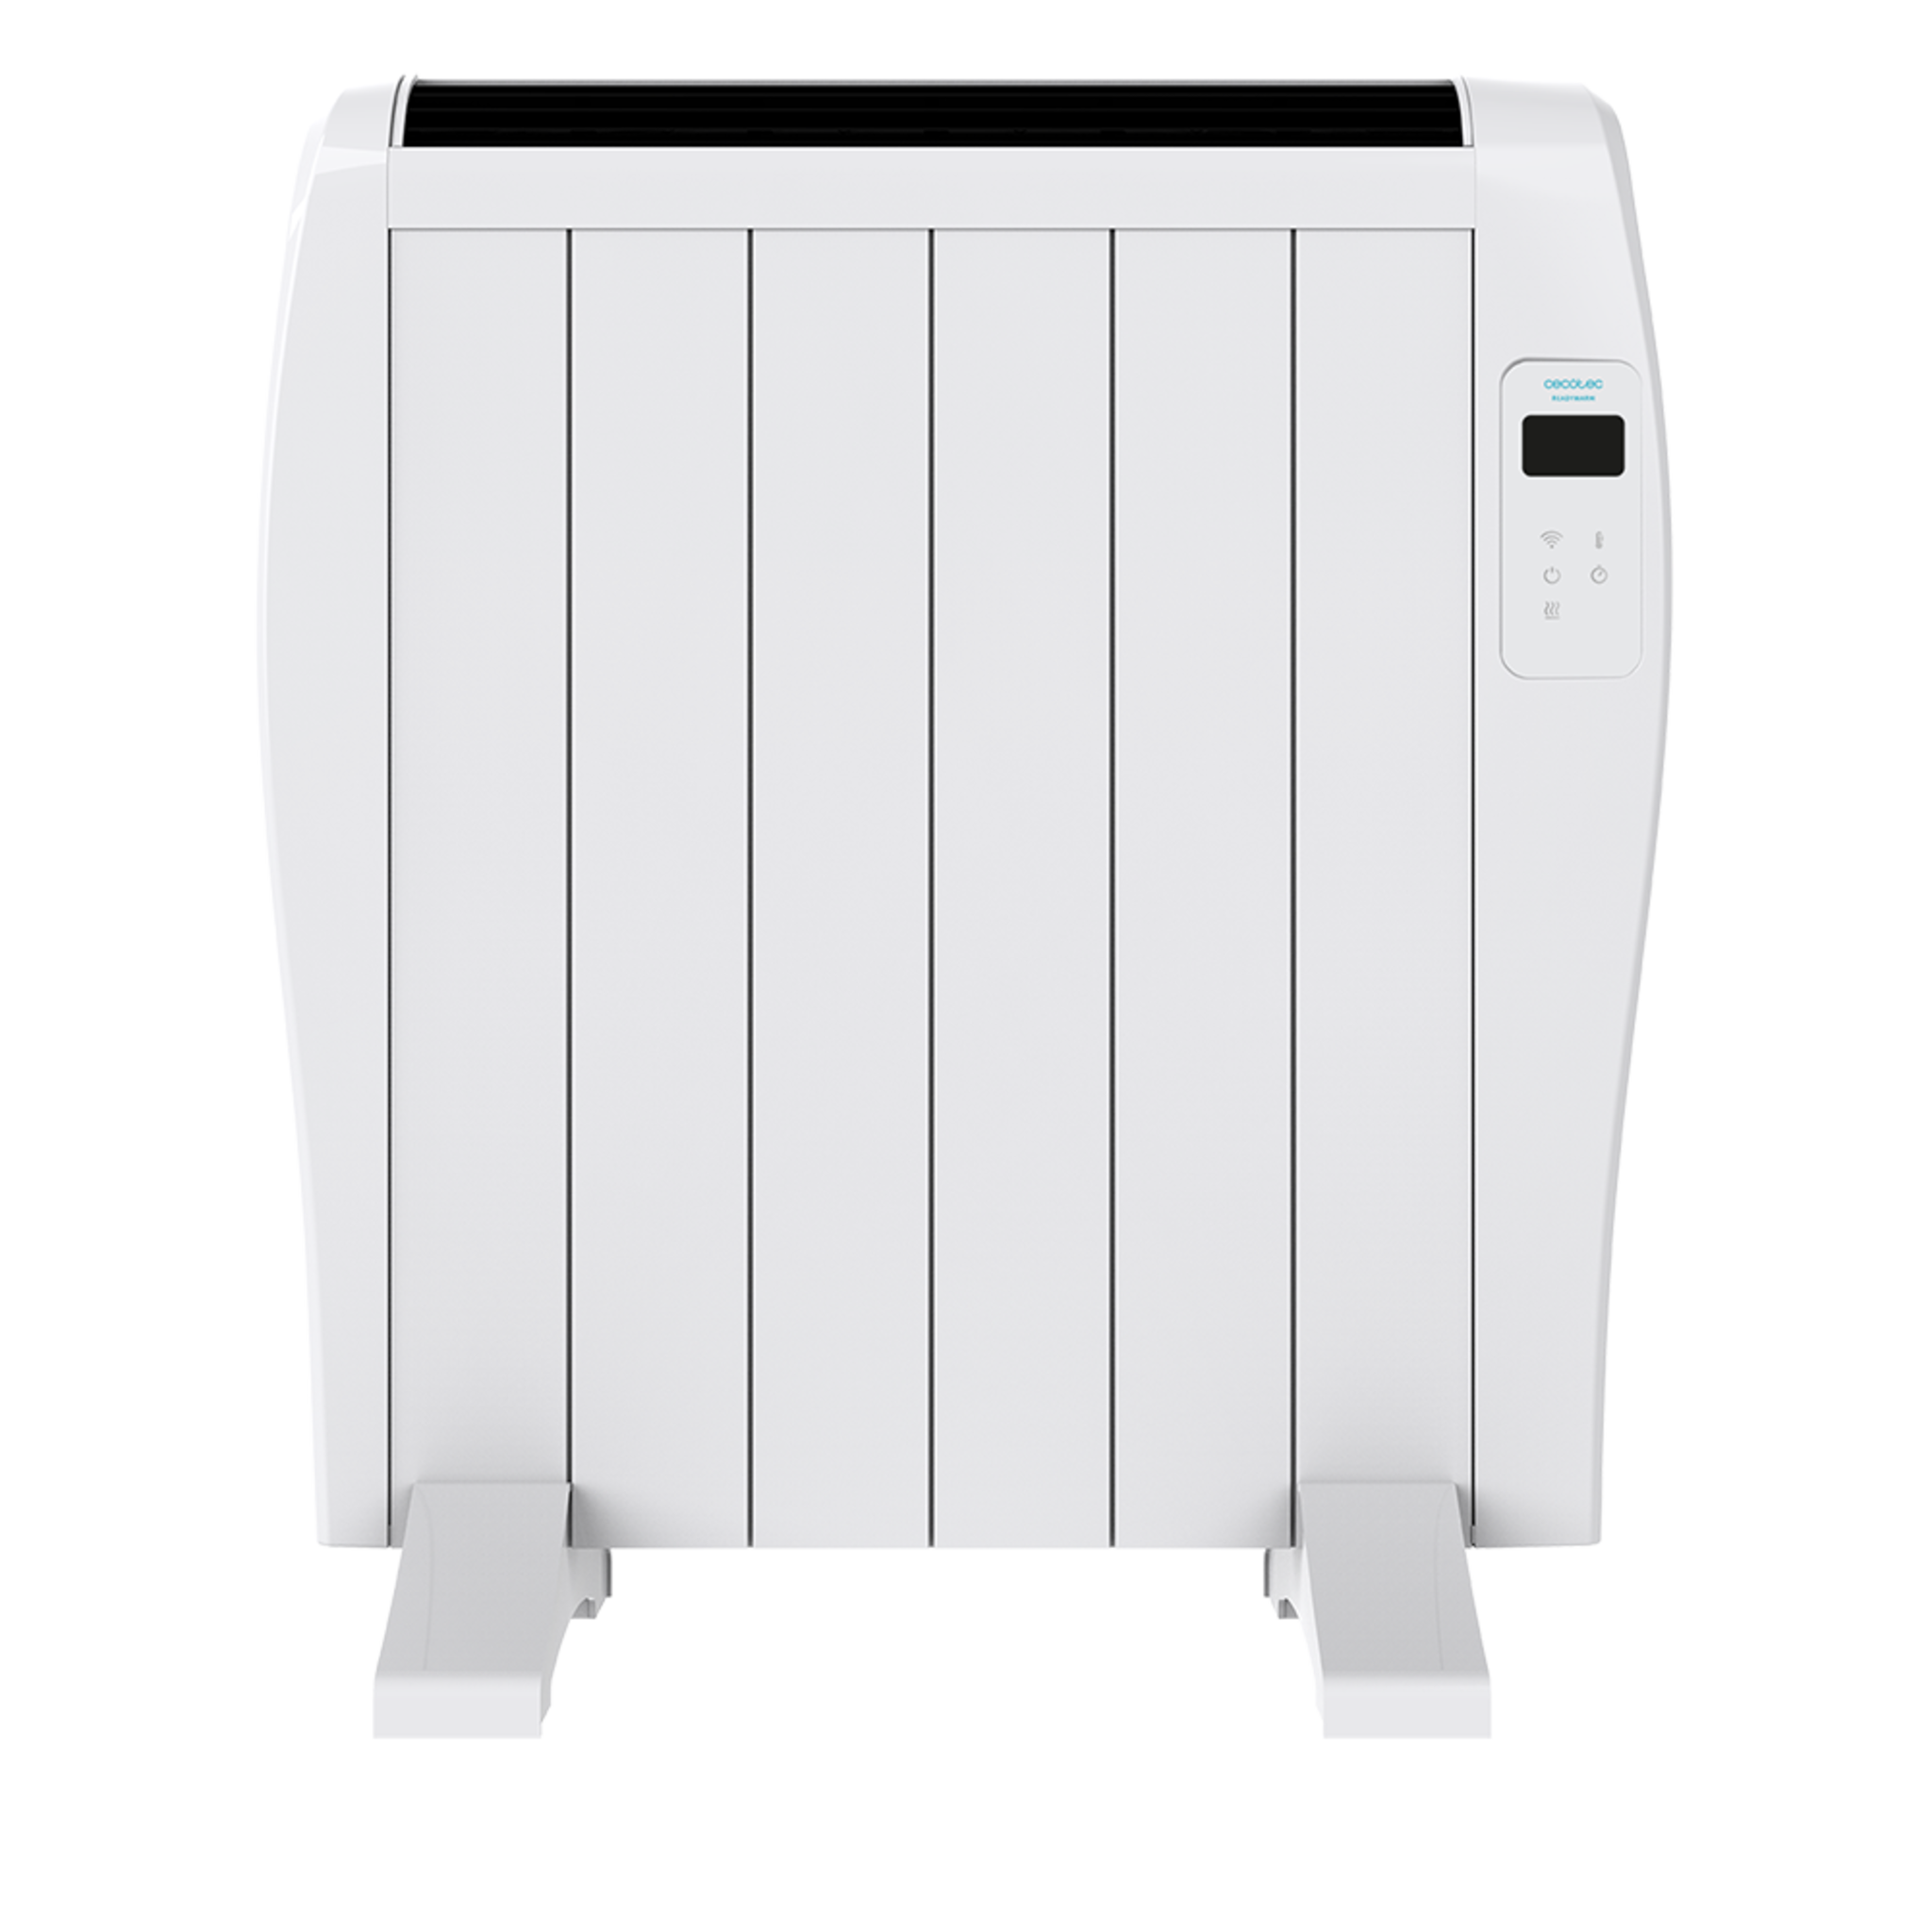 Radiateur électrique à faible consommation Ready Warm 1200 Thermal Connected. Avec 6 éléments, 900 W, mural ou sur pied, 3 modes, minuterie, télécommande, écran LED, contrôle via Wi-Fi, ultra-fin